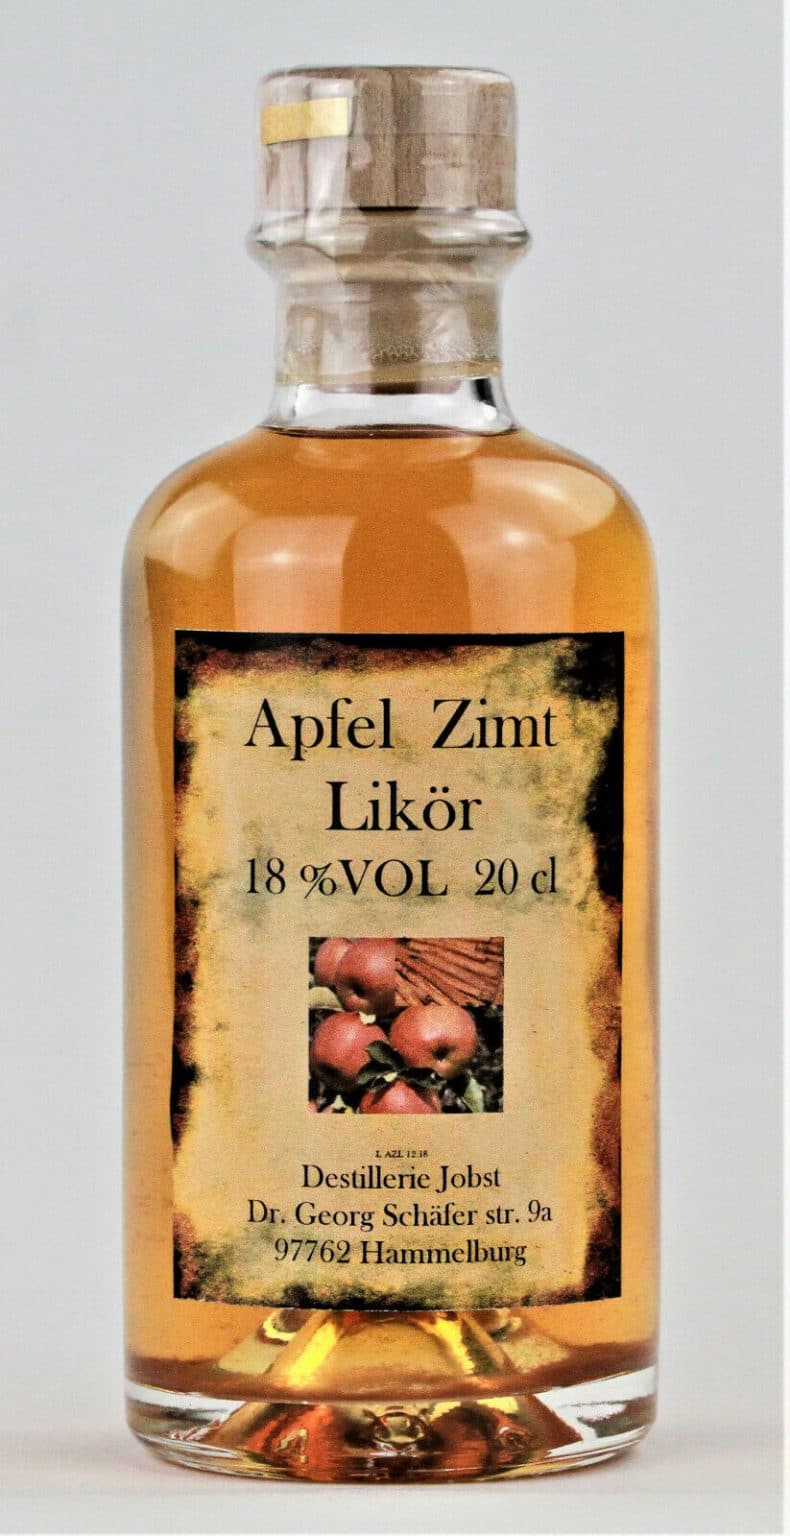 Apfel-Zimt-Likör | Destillerie Jobst